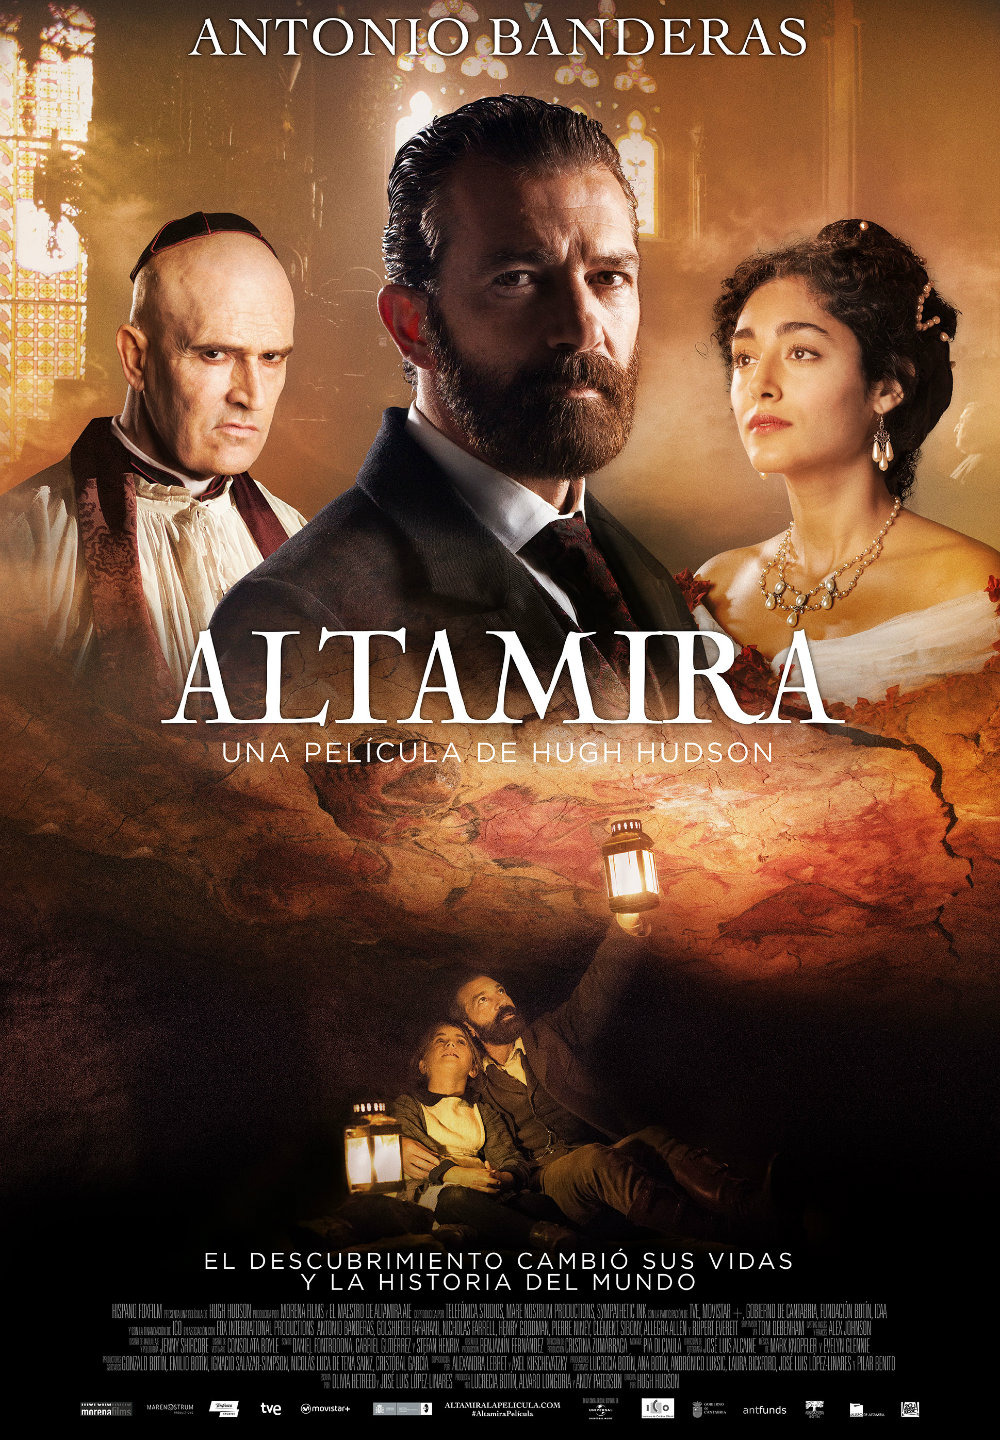 Altamira, la nueva película de Antonio Banderas,  se estrena este viernes en cines